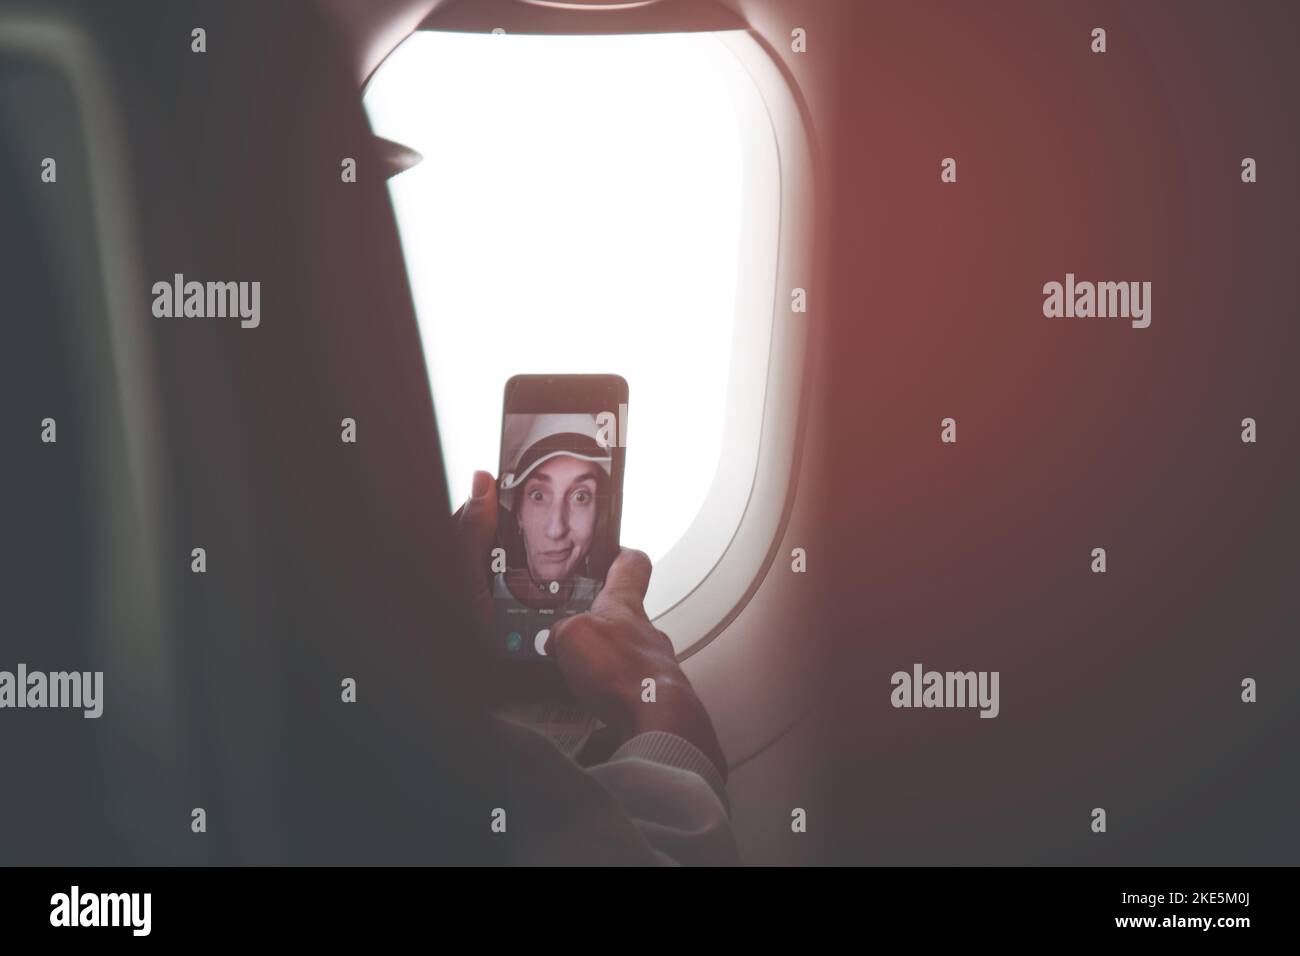 Jeune femme caucasienne pose passager pour selfie écran tactile smartphone dans le siège de cabine d'avion avant le vol. Drôle de filles sur le poste de vacances sur socia Banque D'Images